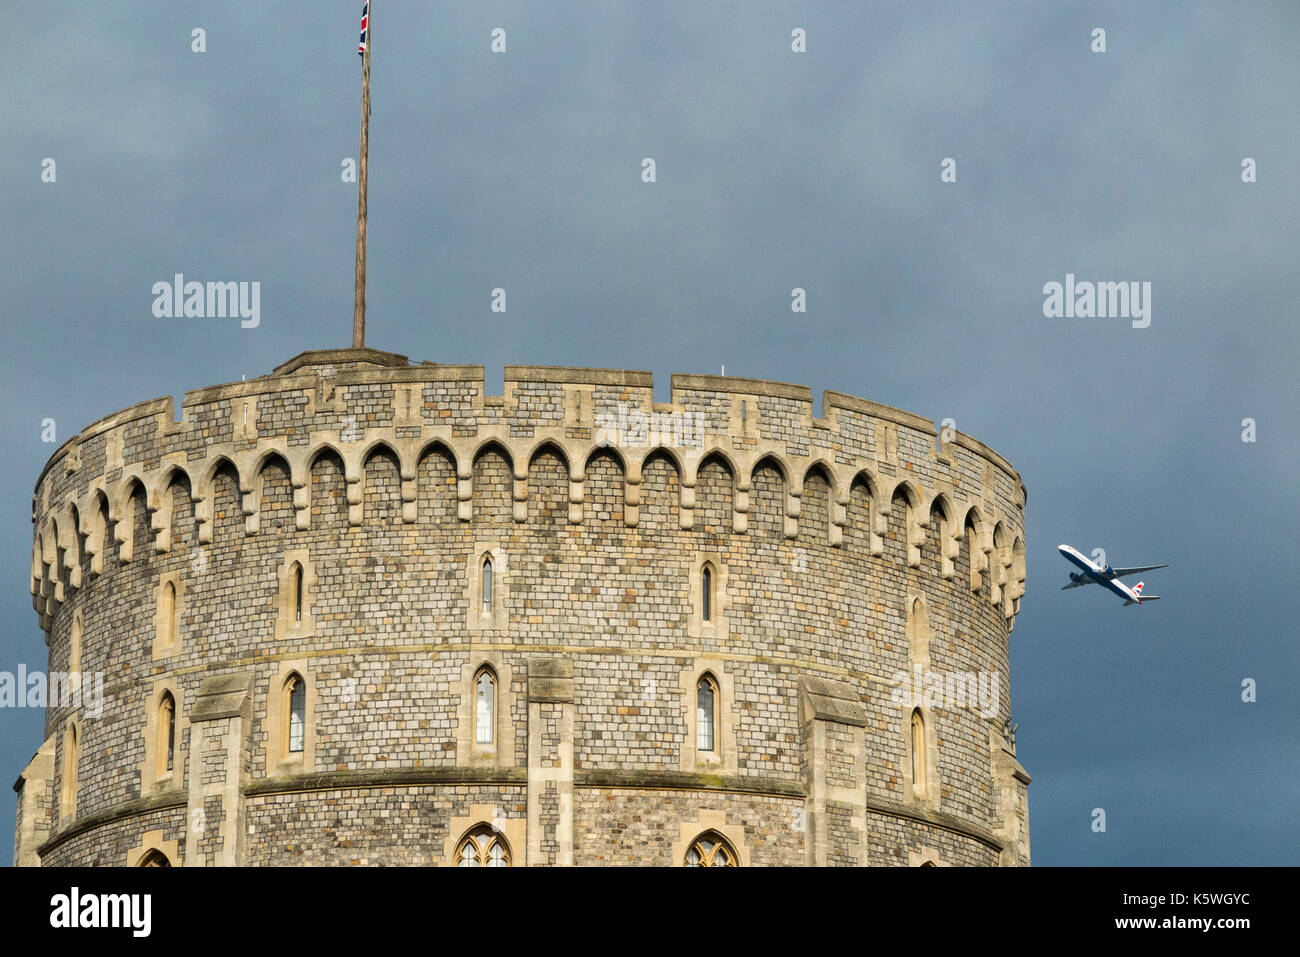 Avion / avion / avion / vol de l'aéroport d'Heathrow passant sur la tour ronde du château de Windsor pendant la montée après le décollage. (90) Banque D'Images